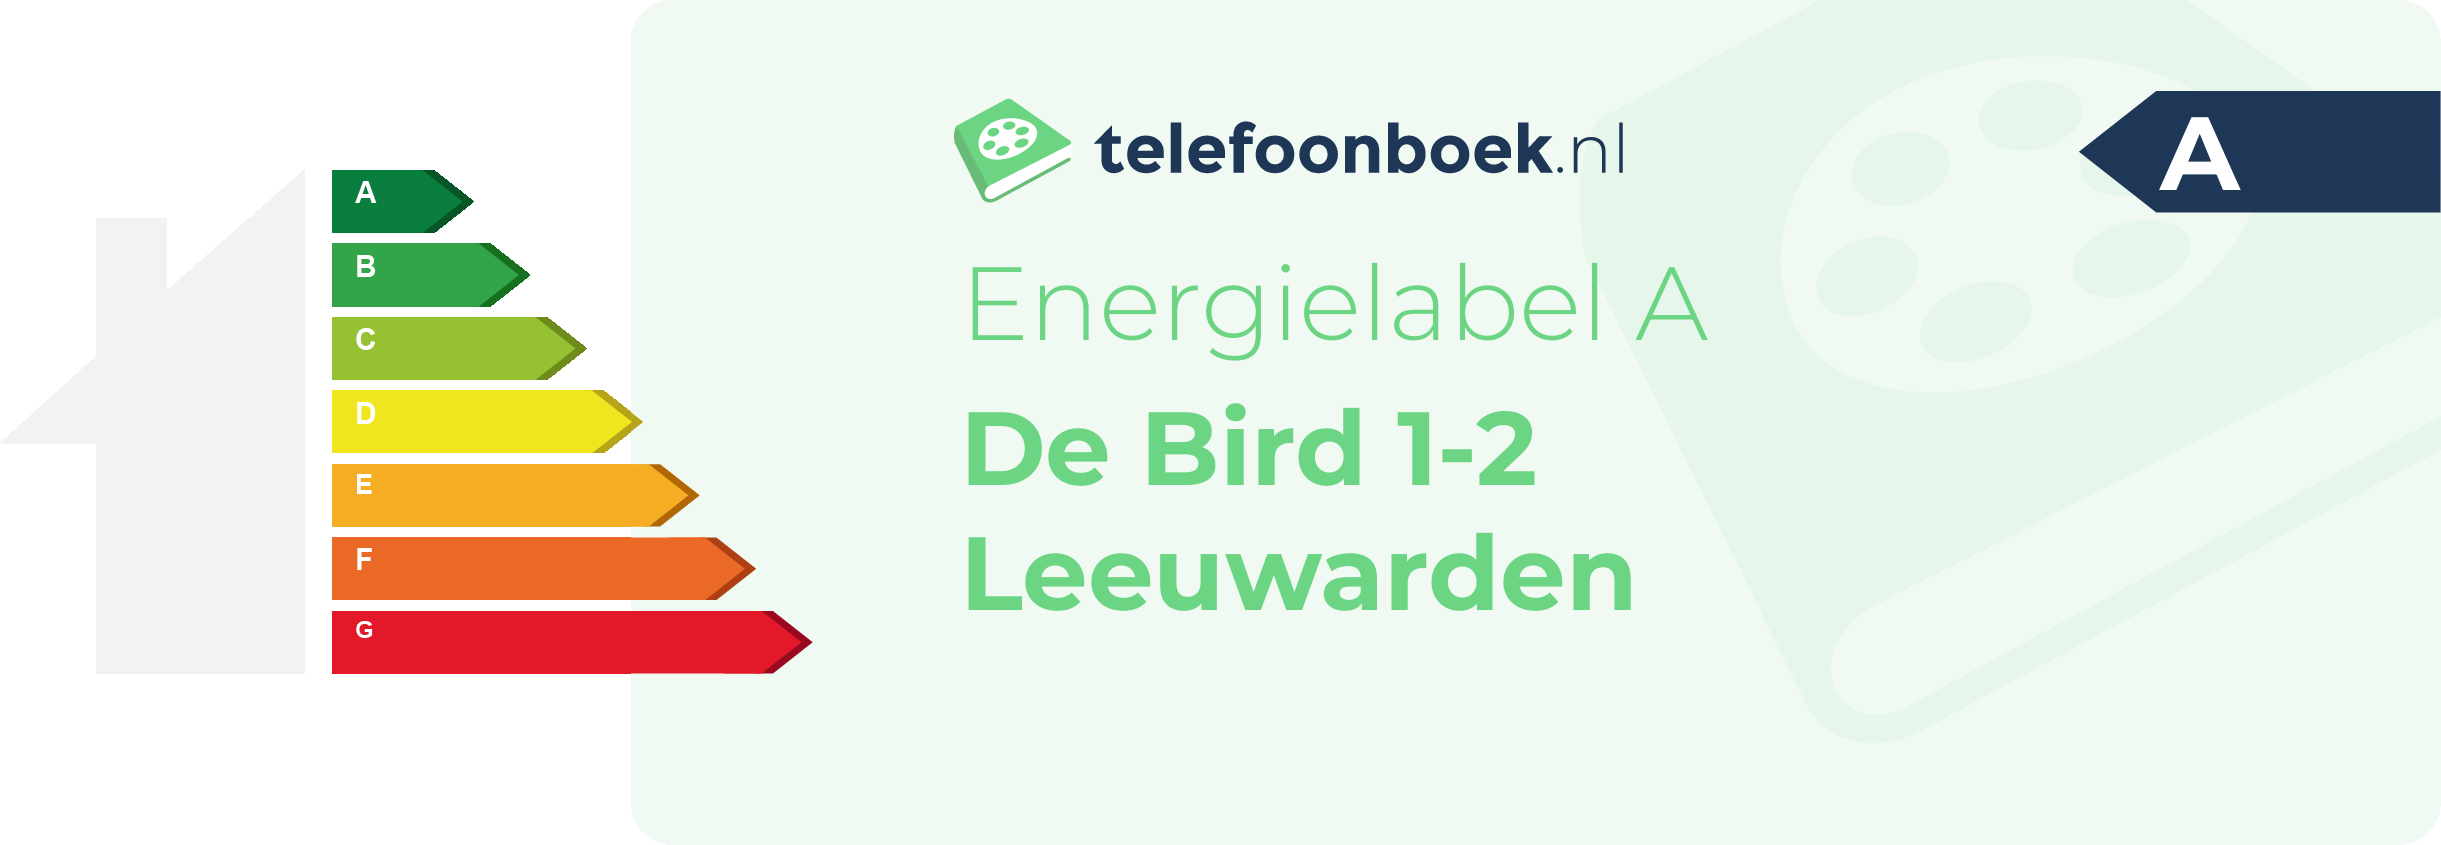 Energielabel De Bird 1-2 Leeuwarden